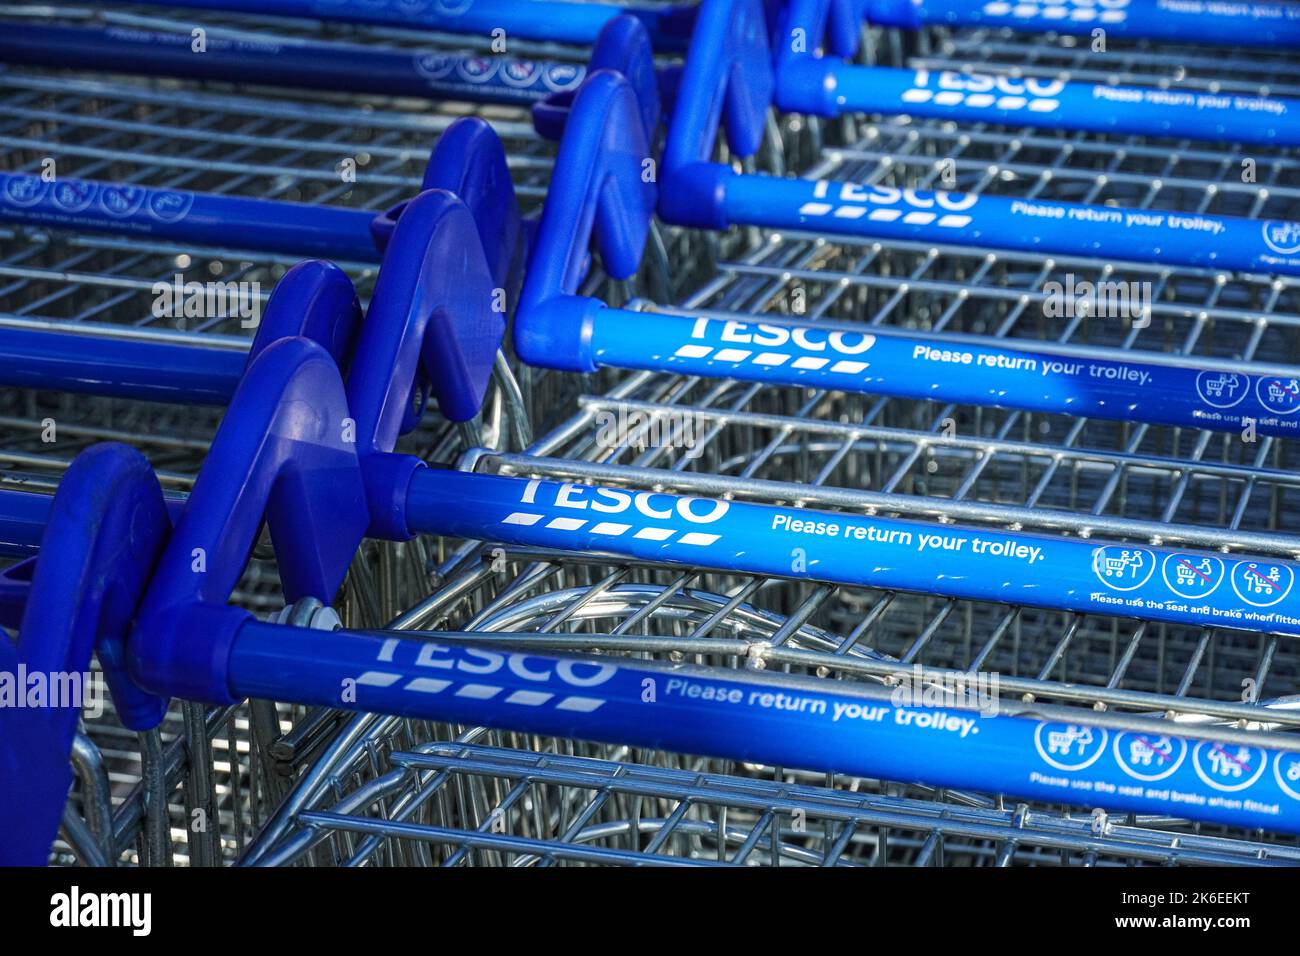 Reihen von Tesco Trolleys vor dem Supermarkt, London, England, Großbritannien, Großbritannien Stockfoto